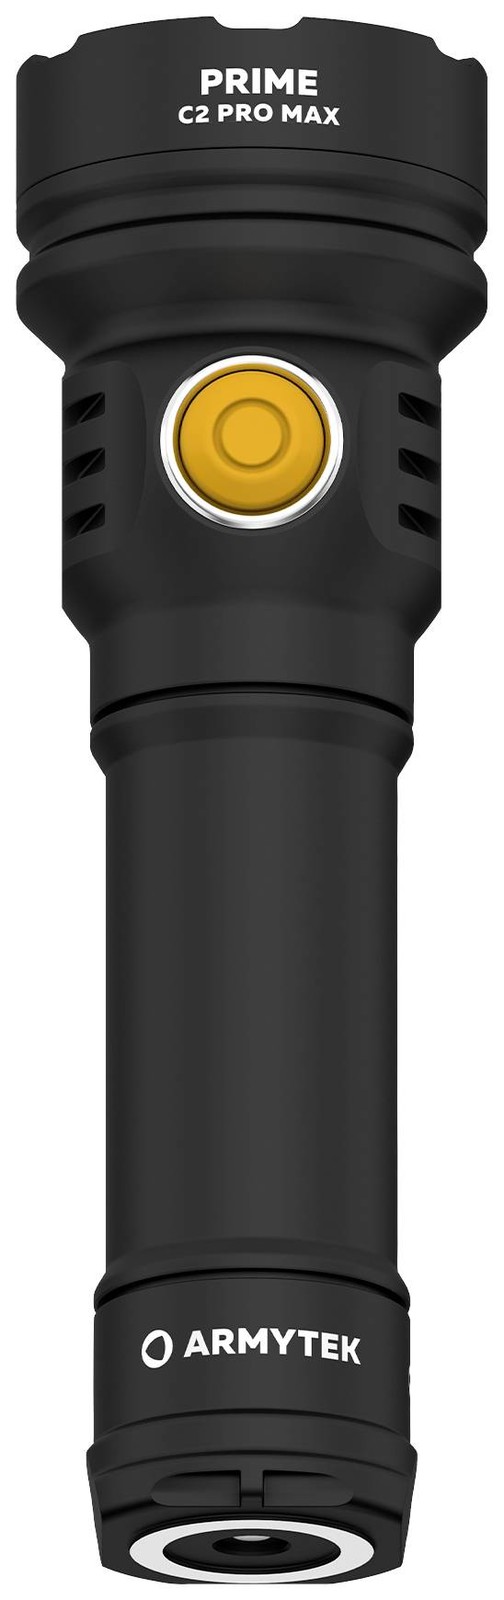 ArmyTek Prime C2 Pro Max Warm LED kapesní svítilna poutko na ruku, s brašnou napájeno akumulátorem 3720 lm 203 g